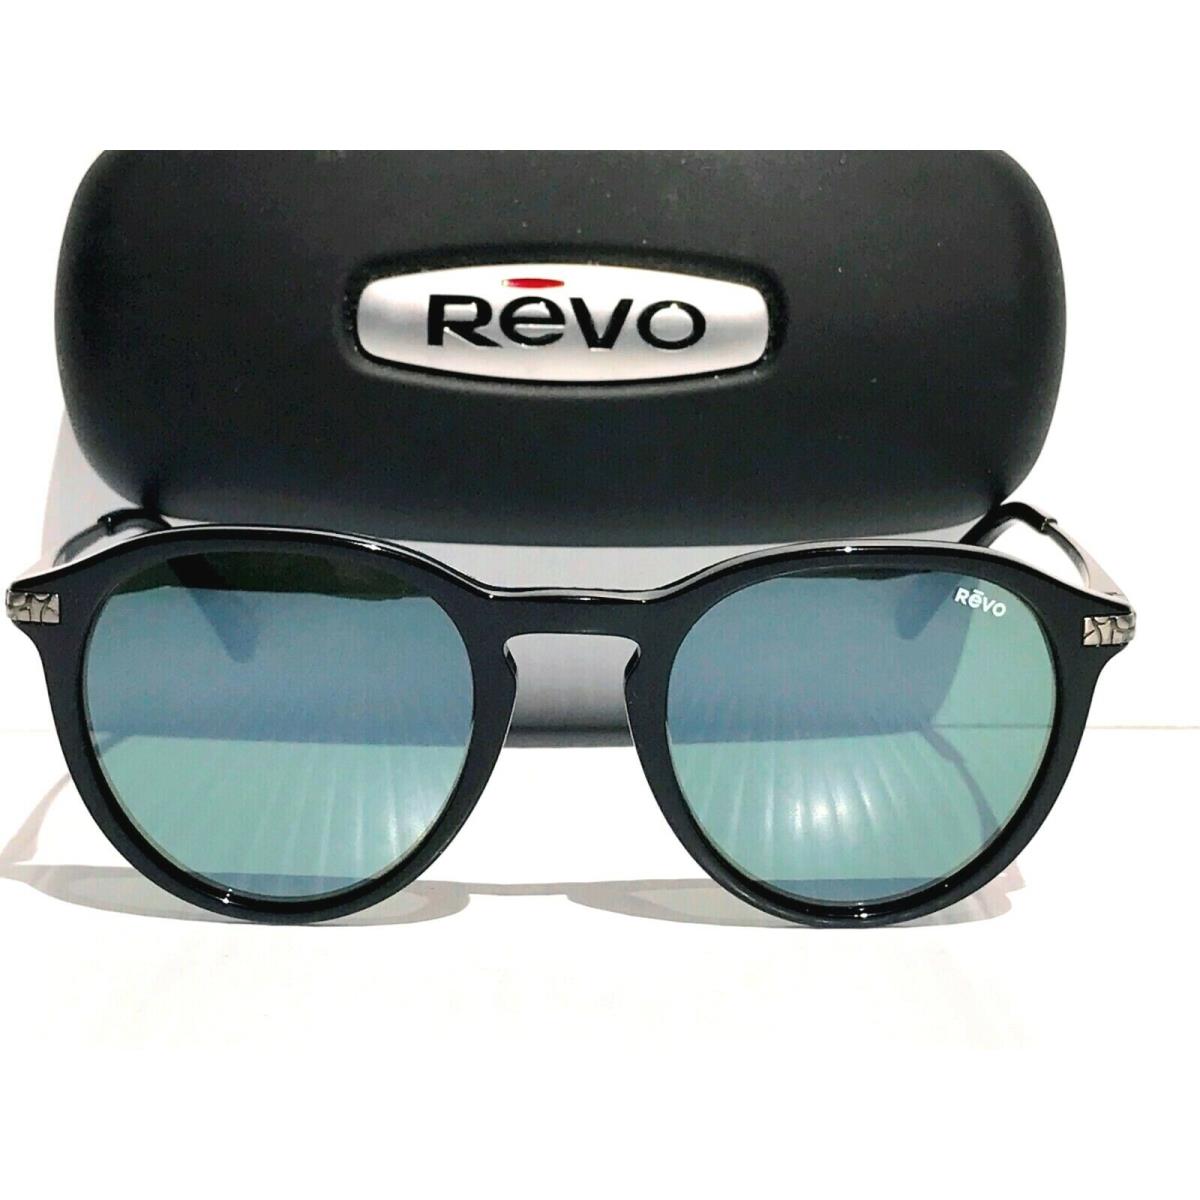 Revo sunglasses PYTHON - Black Frame, Gray Lens 1